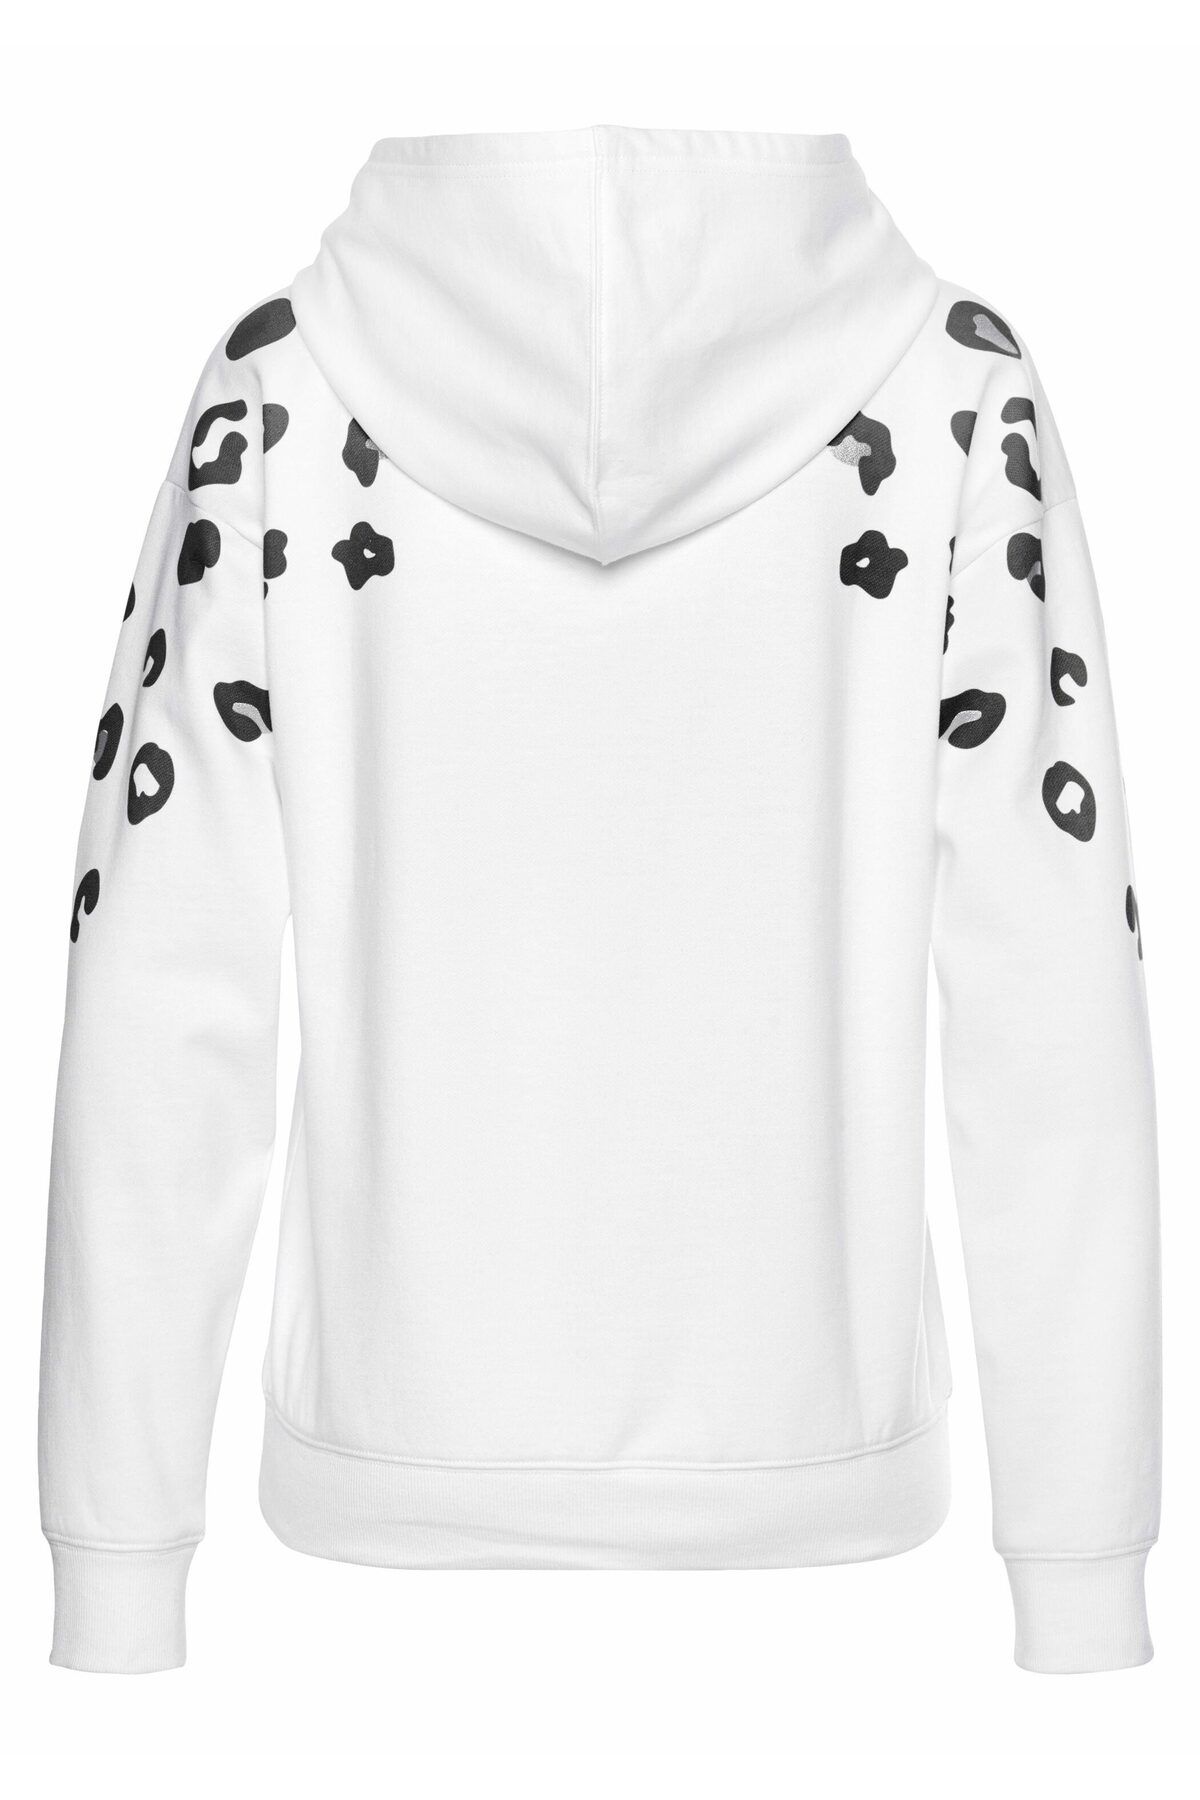 BENCH Sweatshirt - Trendyol - Weiß - Fit Regular